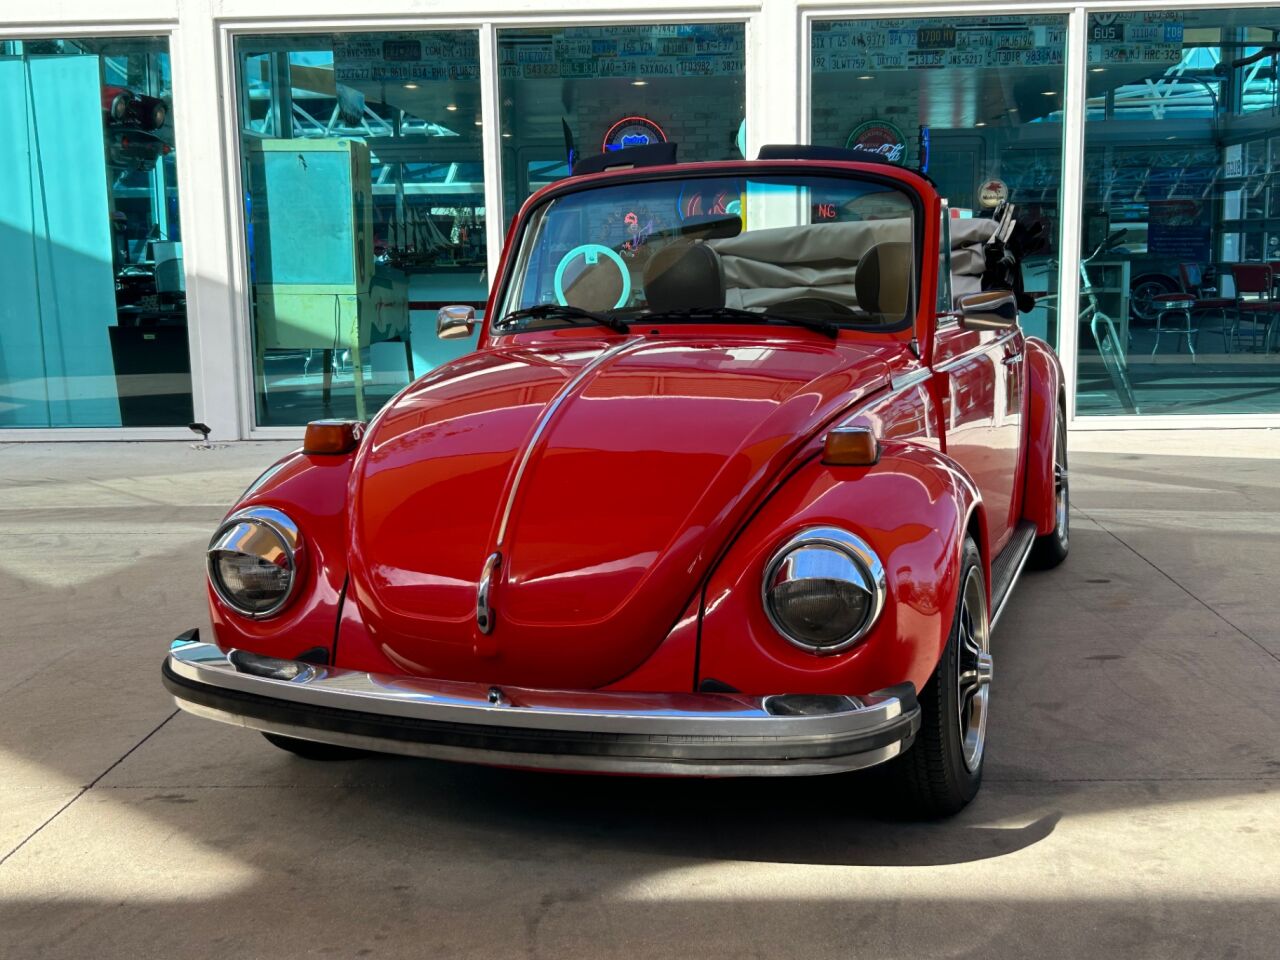 1979 Volkswagen Beetle 1